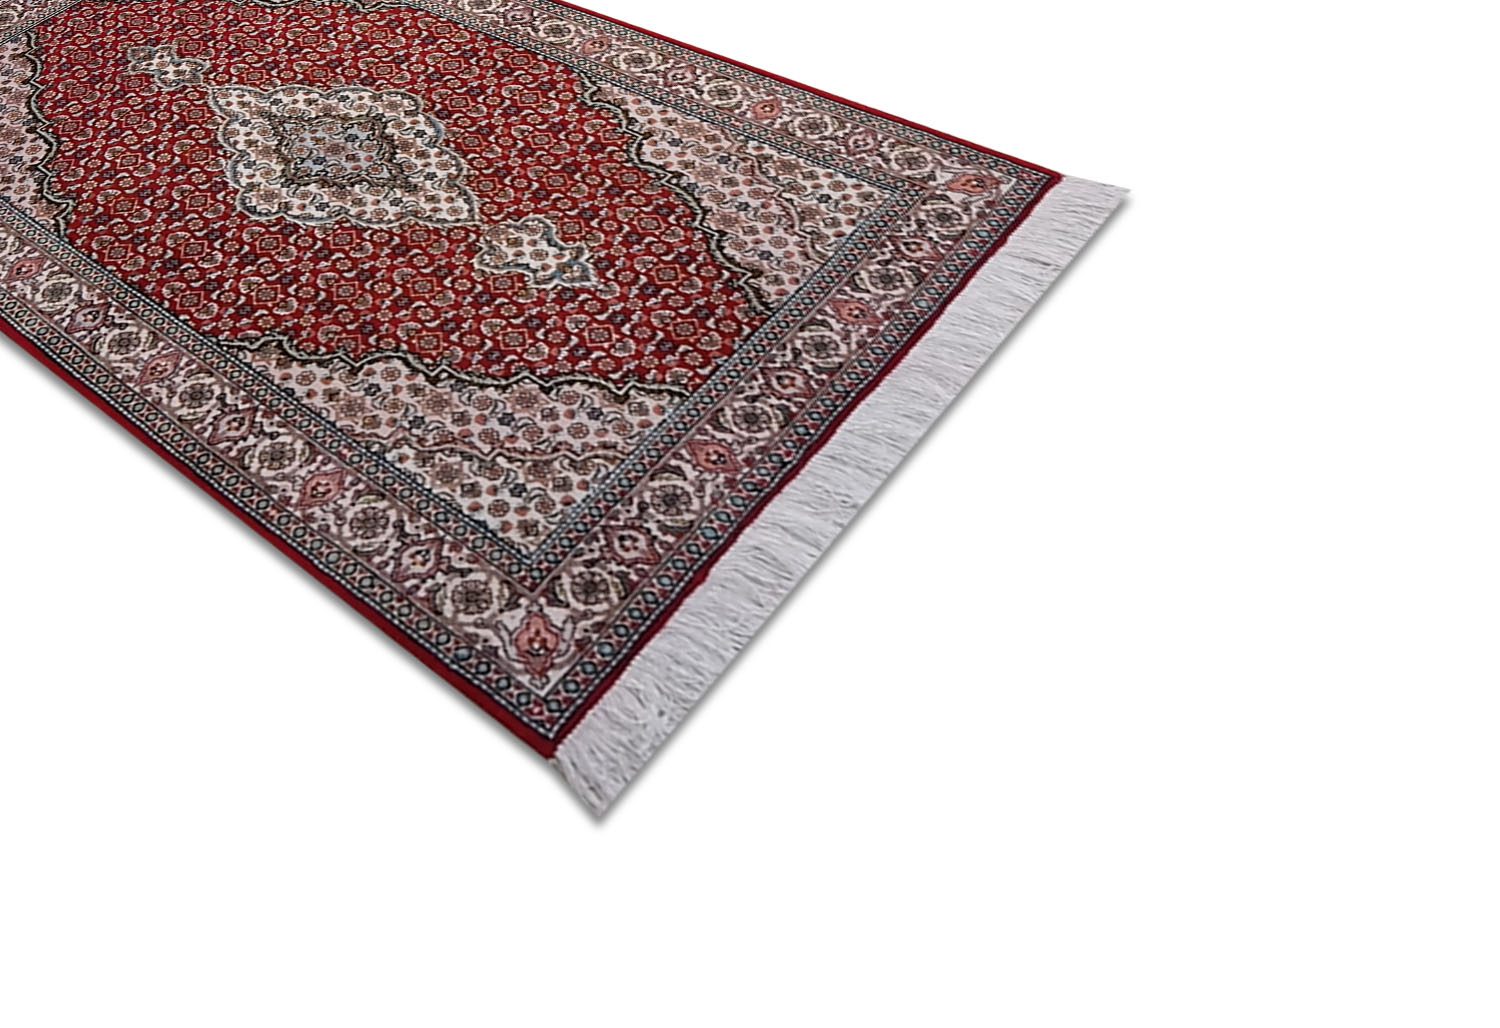 Tappeti Nain. L'arte di annodare i tappeti tramite una tradizione unica.